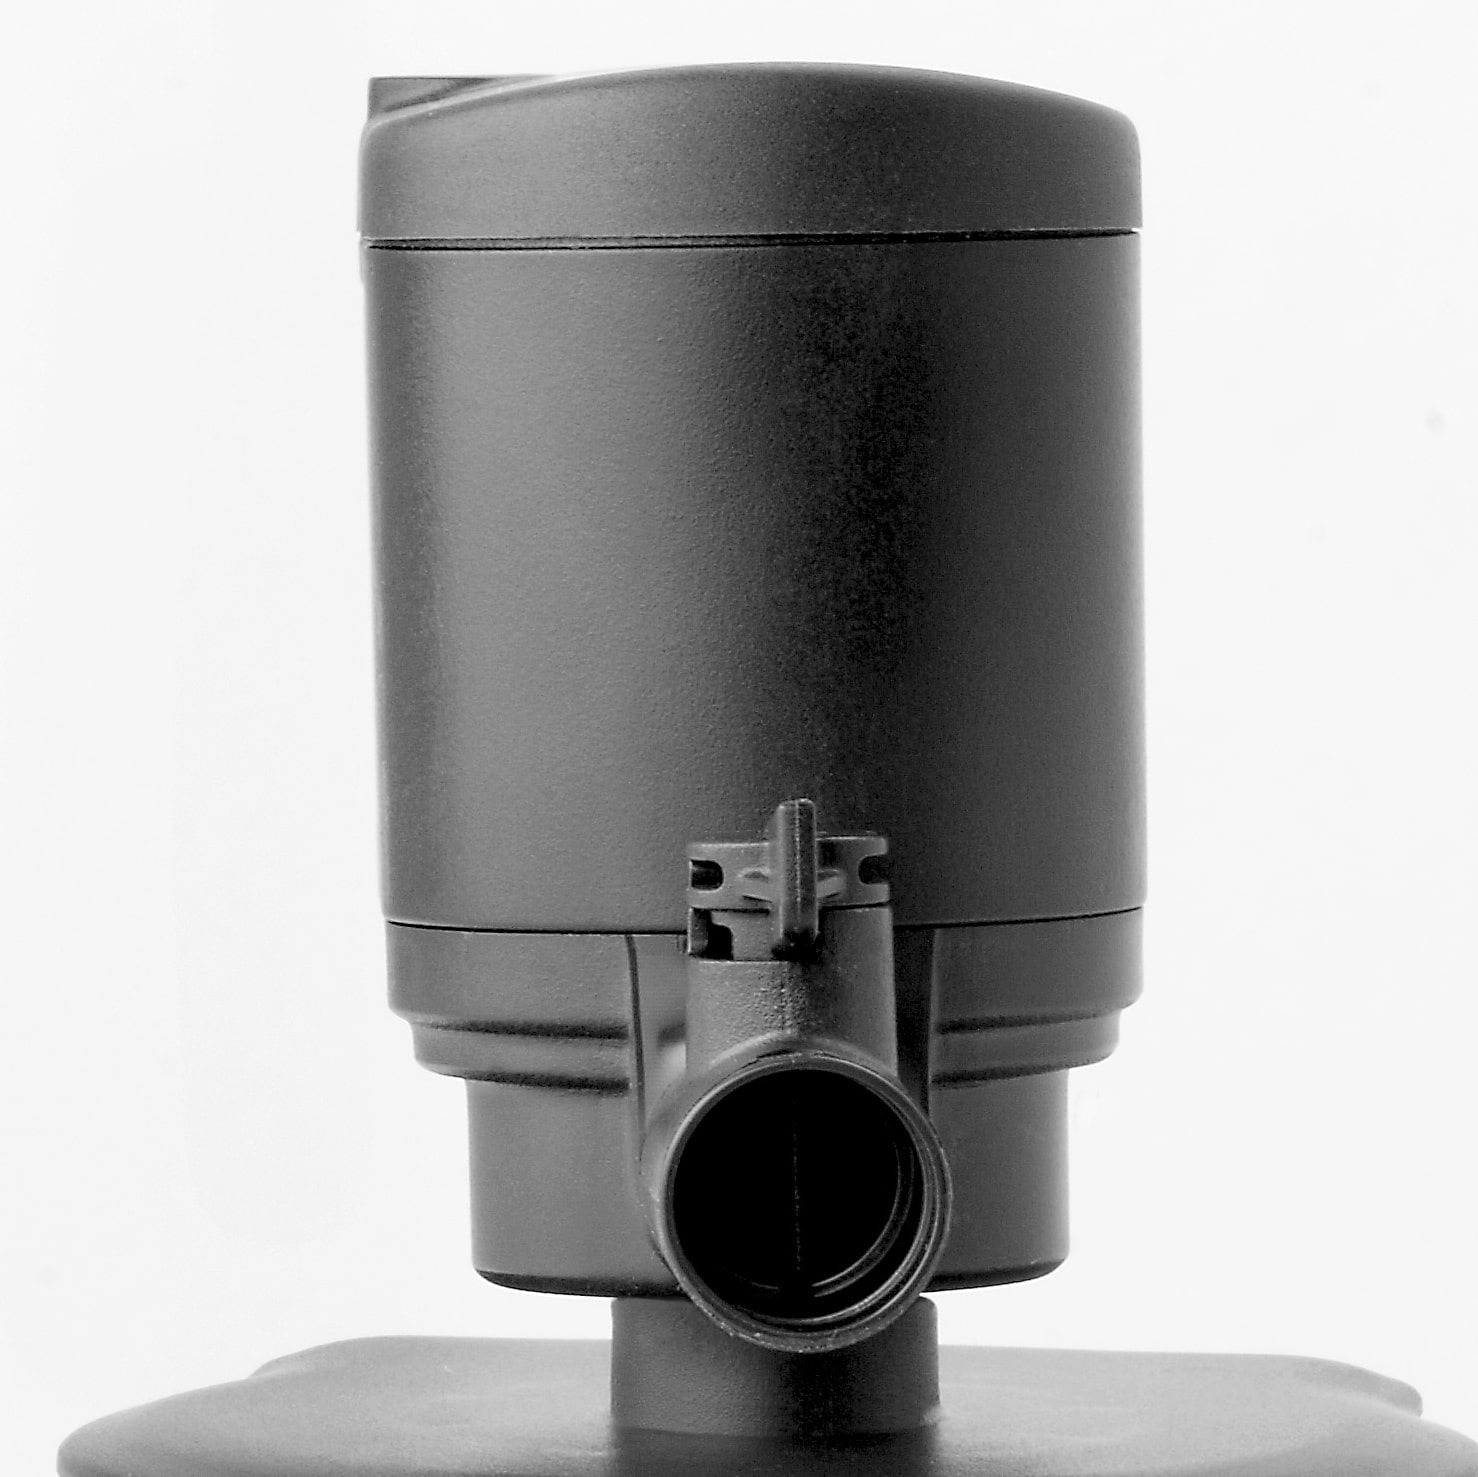 aquael-turbo-filter-500-l-h-filtre-interne-de-filtration-mecanique-et-biologique-avec-systeme-d-aeration-de-l-eau-2-min